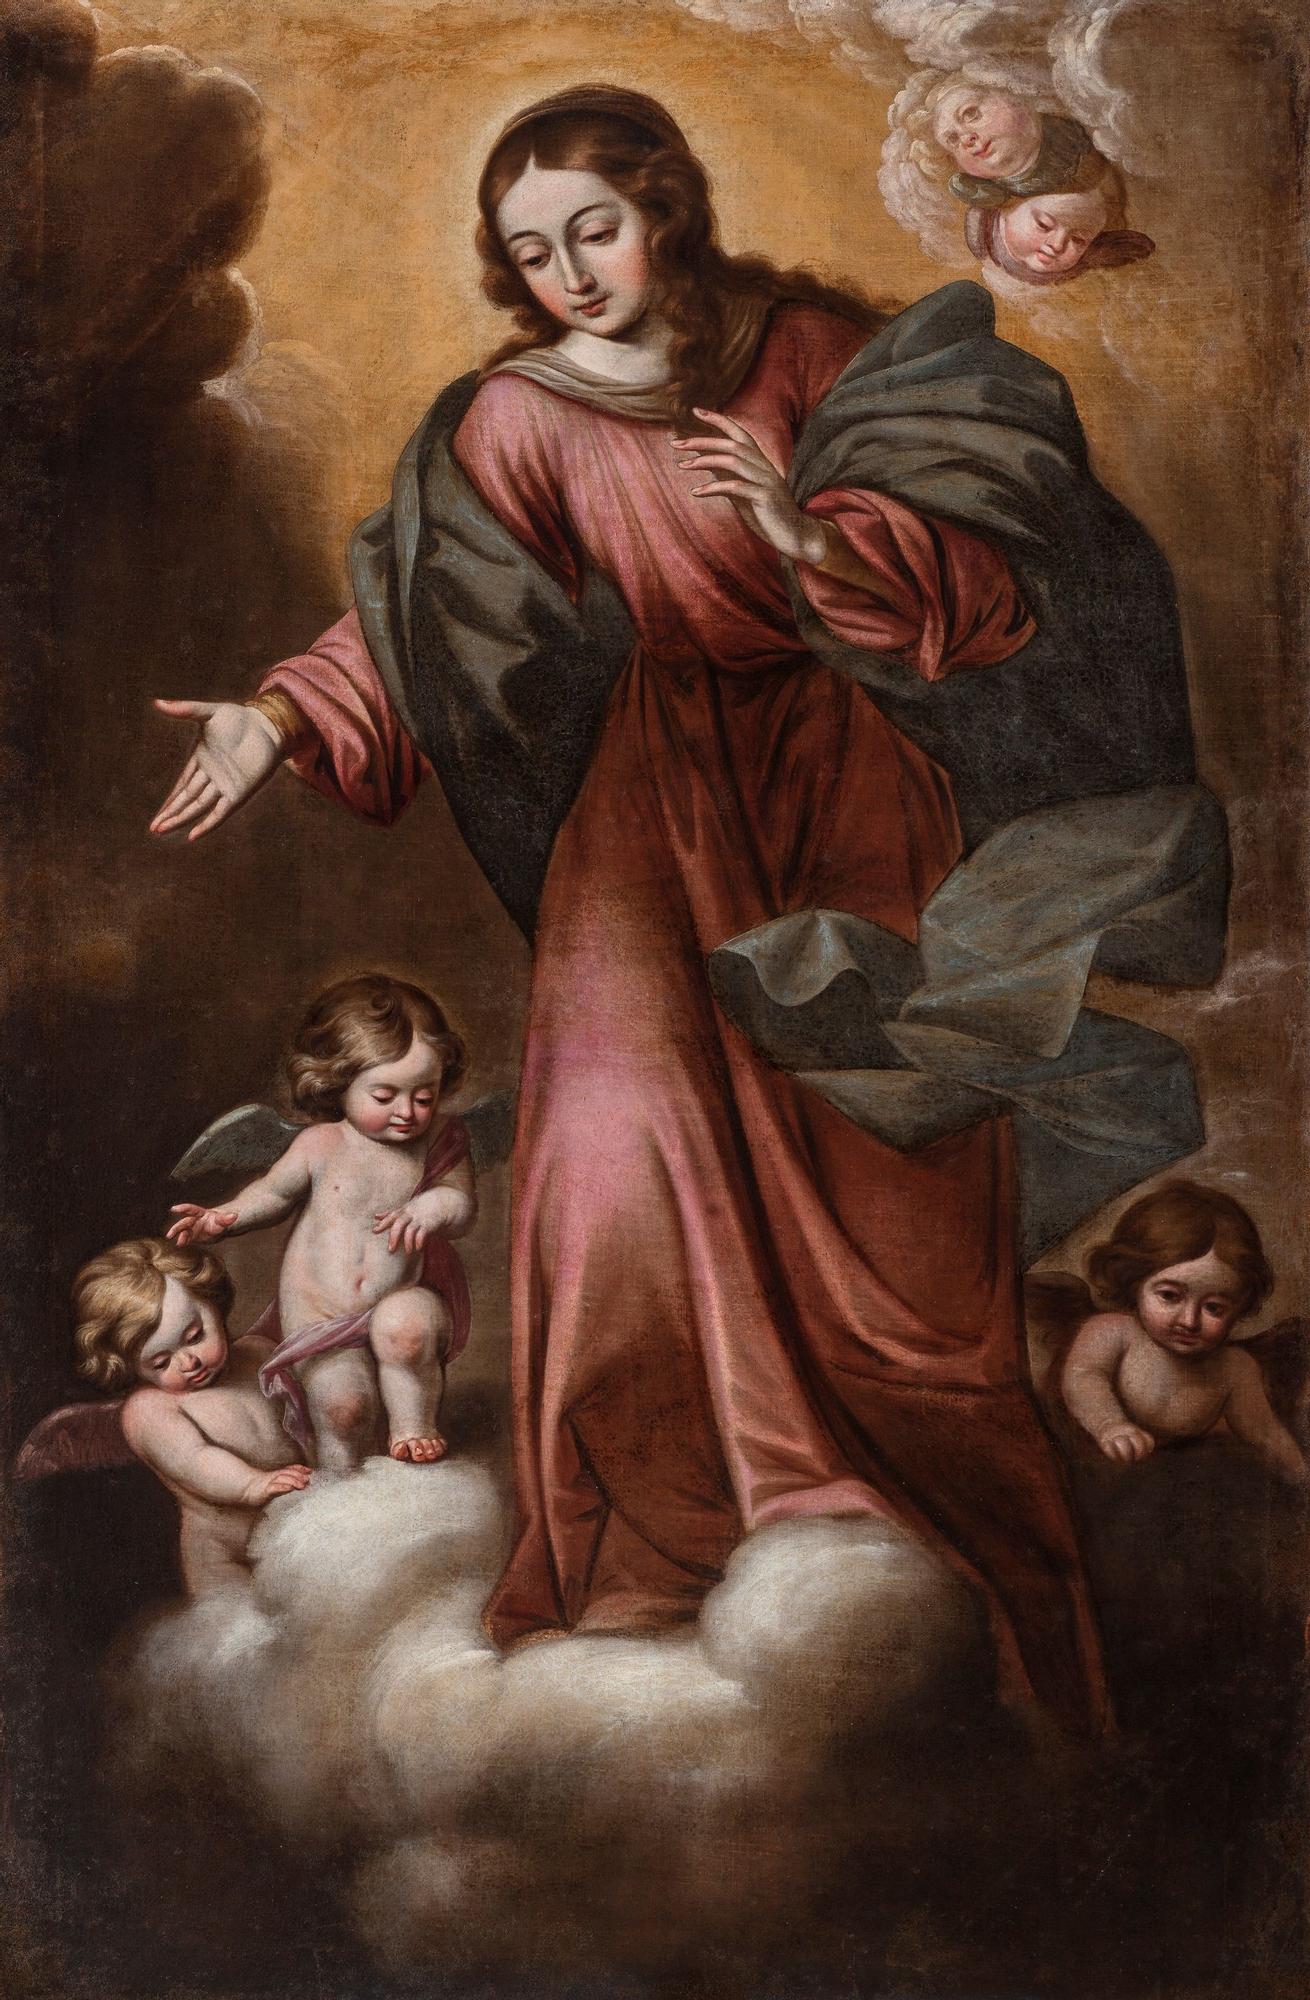 Imagen del cuadro restaurado de la Inmaculada Concepción.